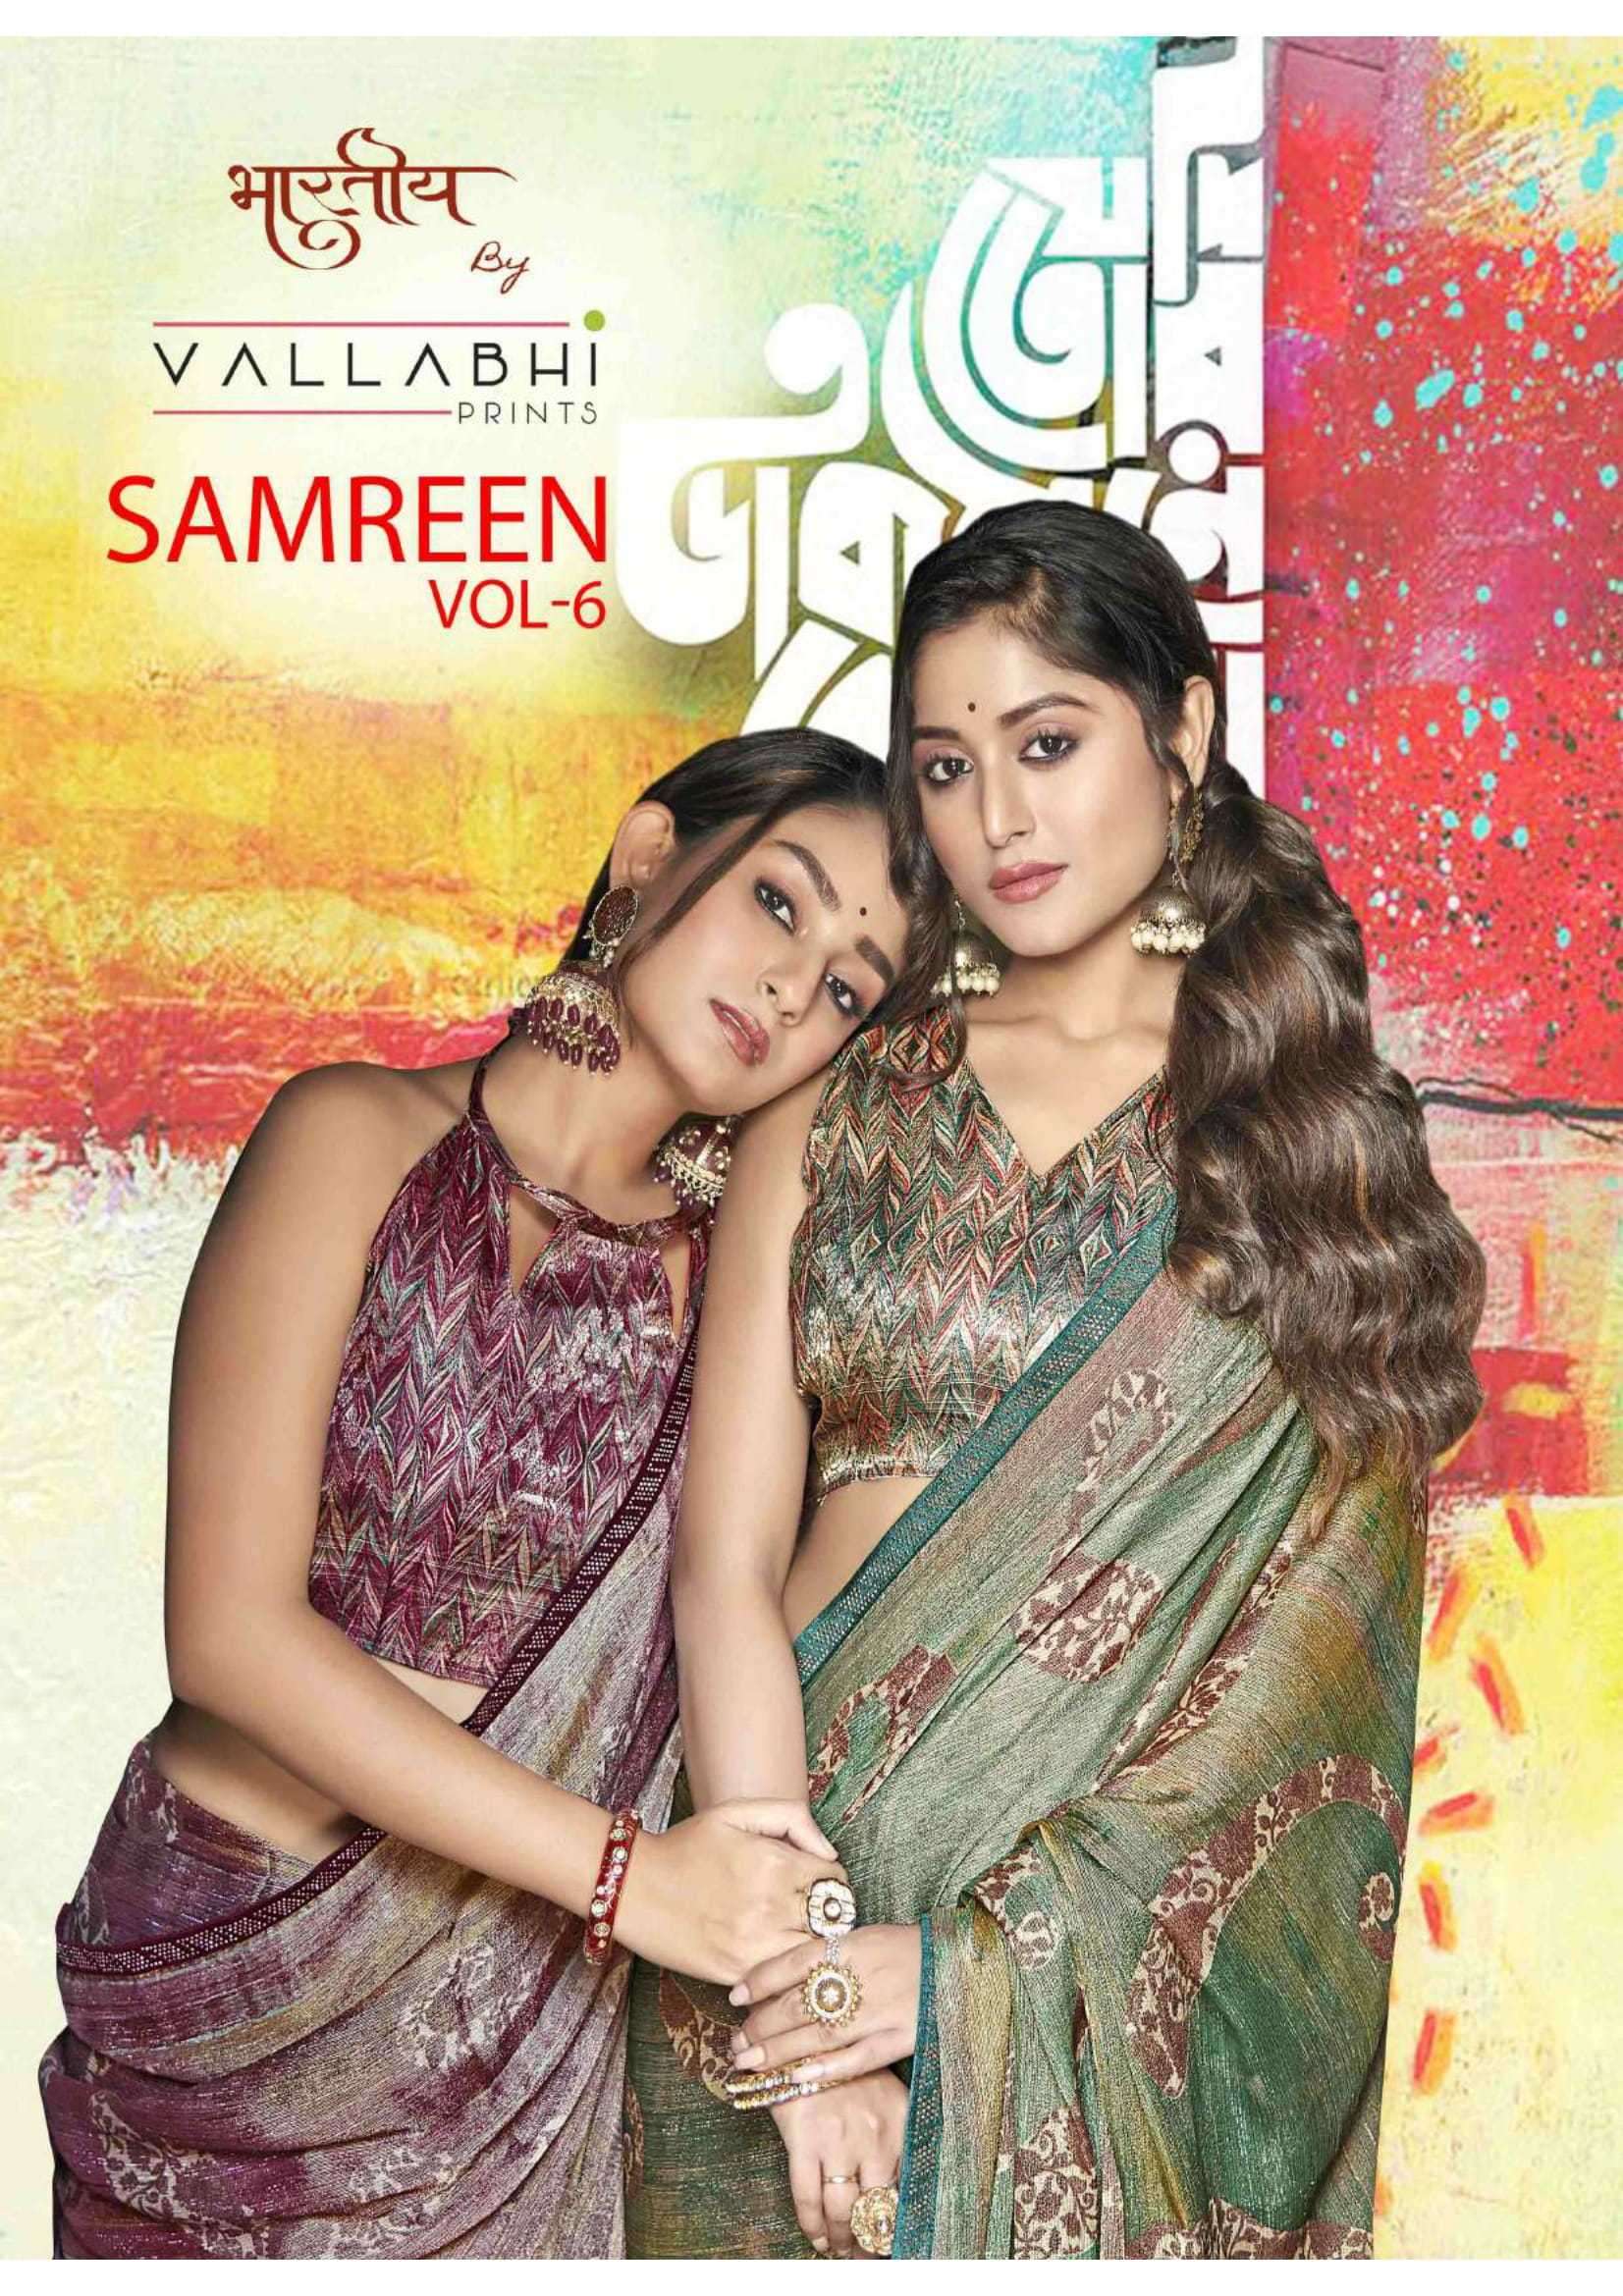 vallabhi prints samreen vol 6 series 27291-27296 brasso saree